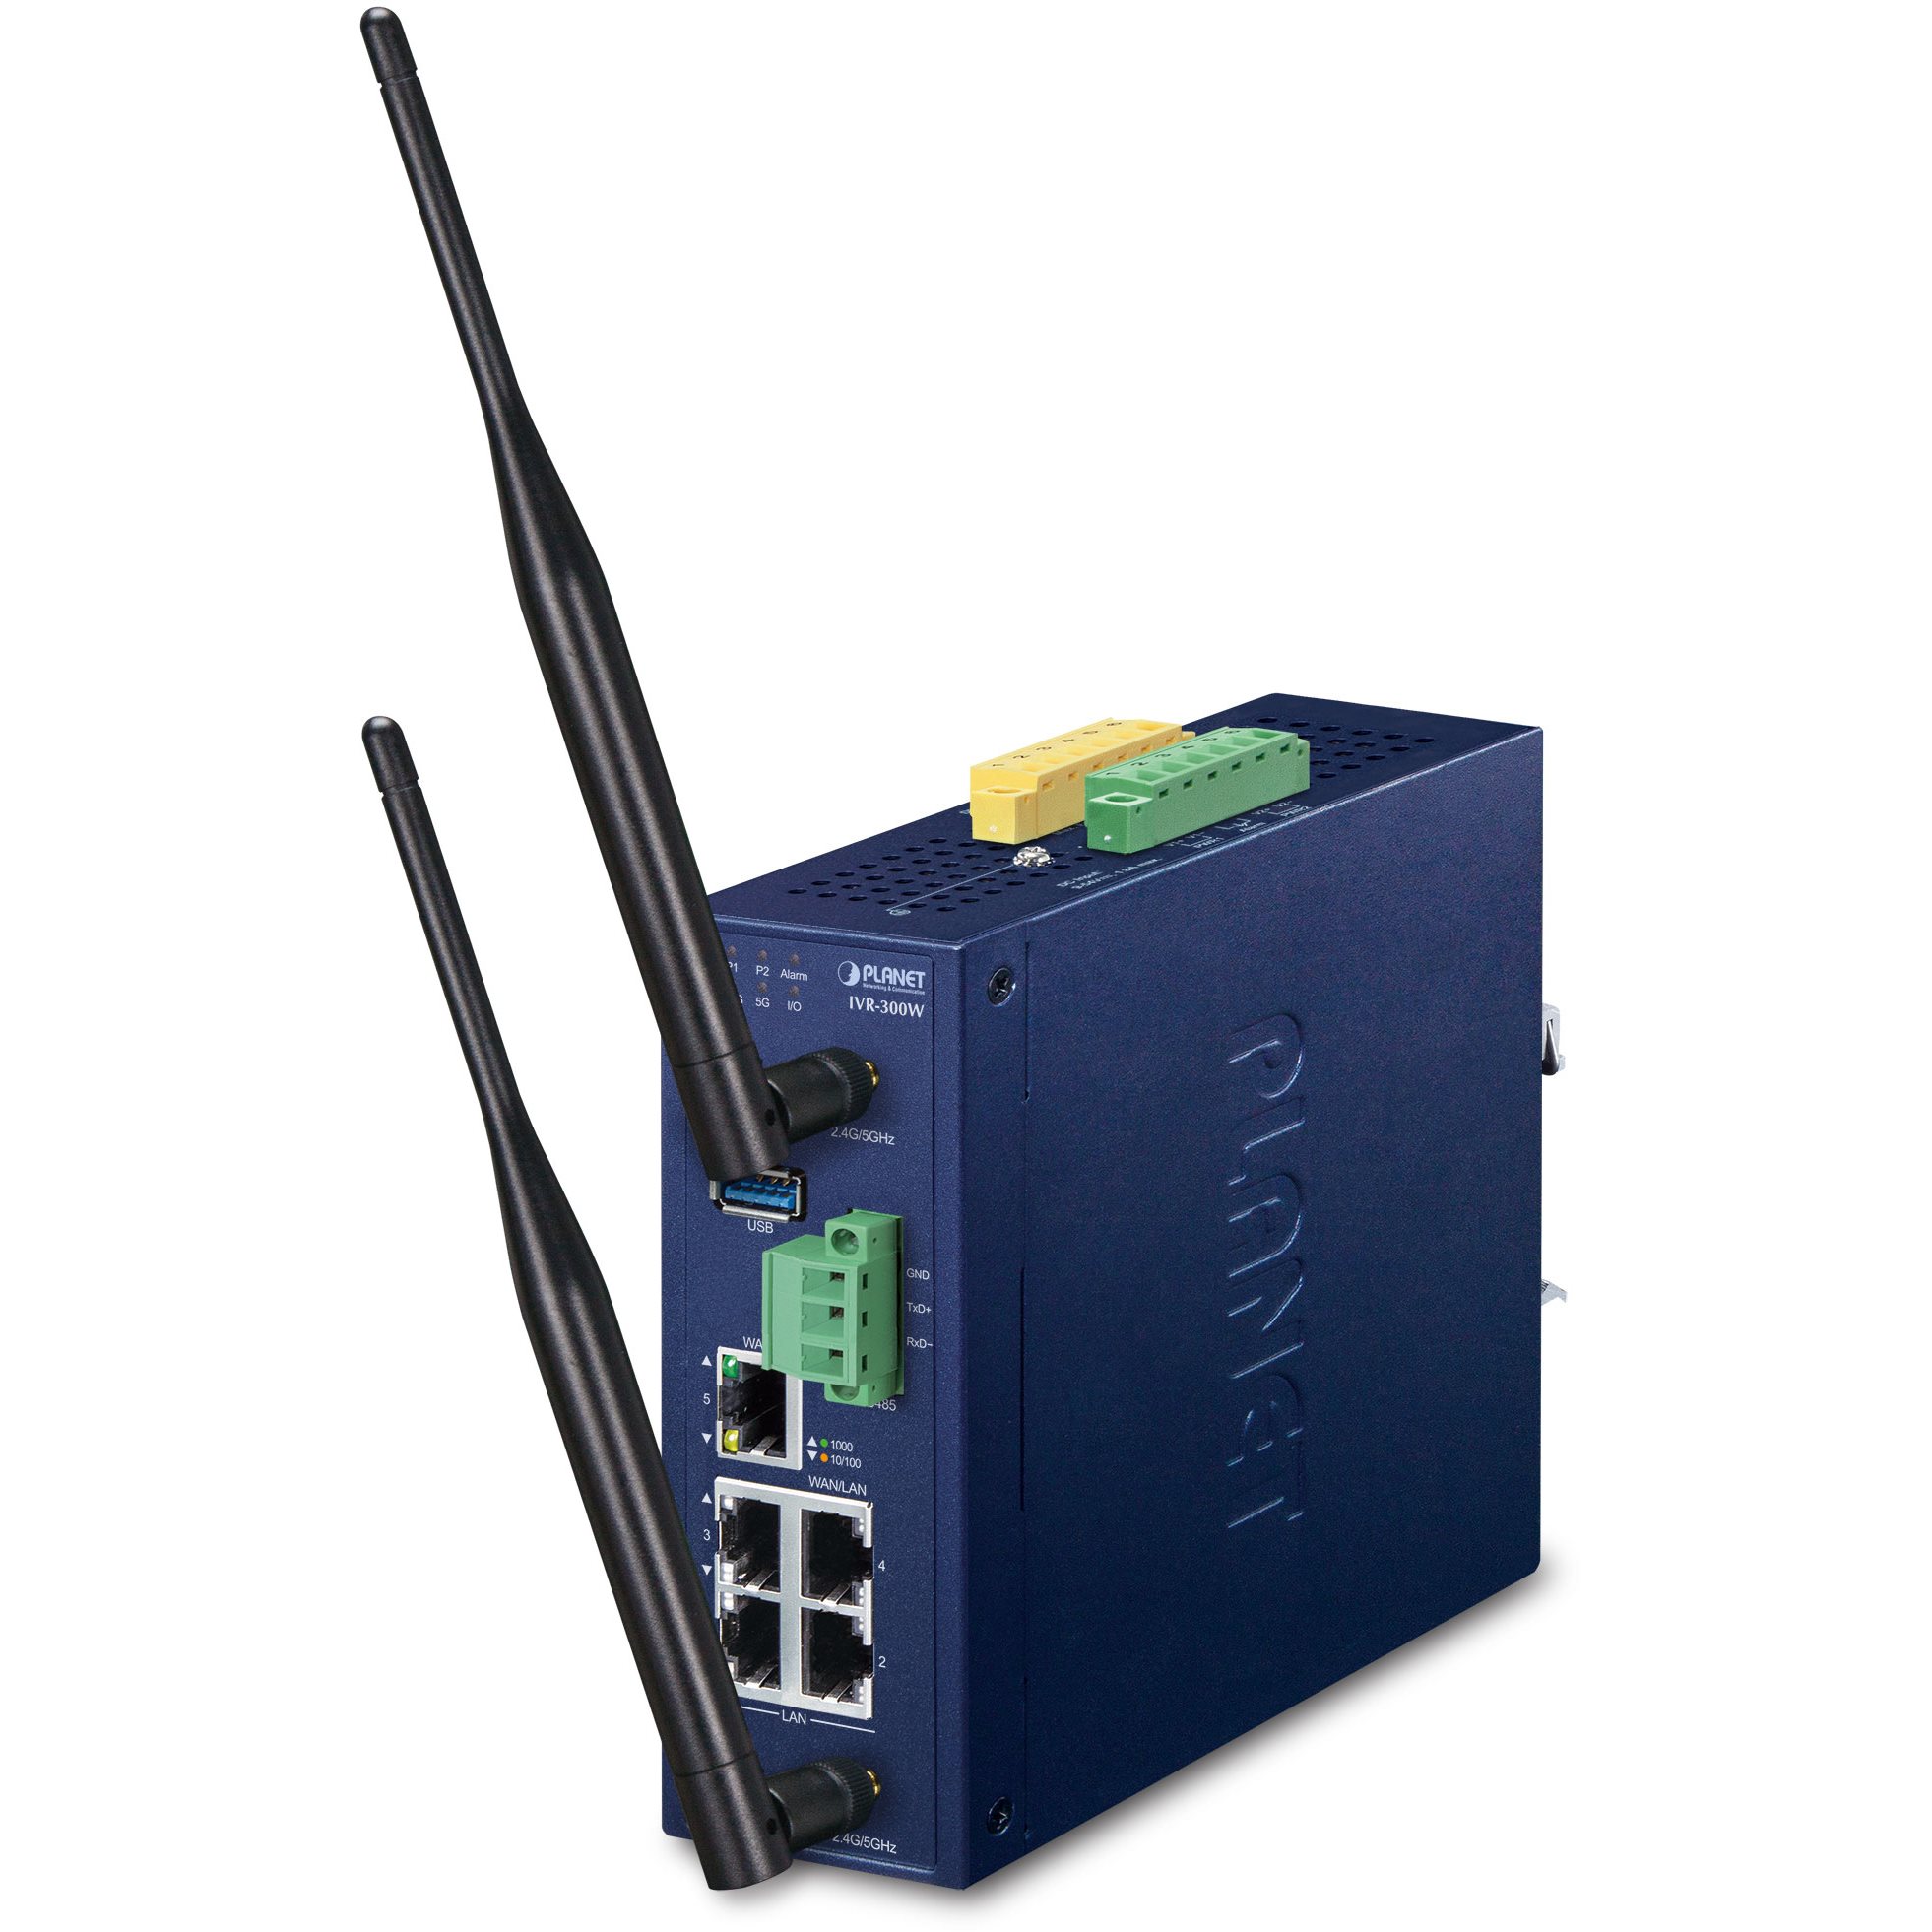   Routeurs  pro   Routeur indus VPN 5 ports Giga Wifi ax -40/75C IVR-300W